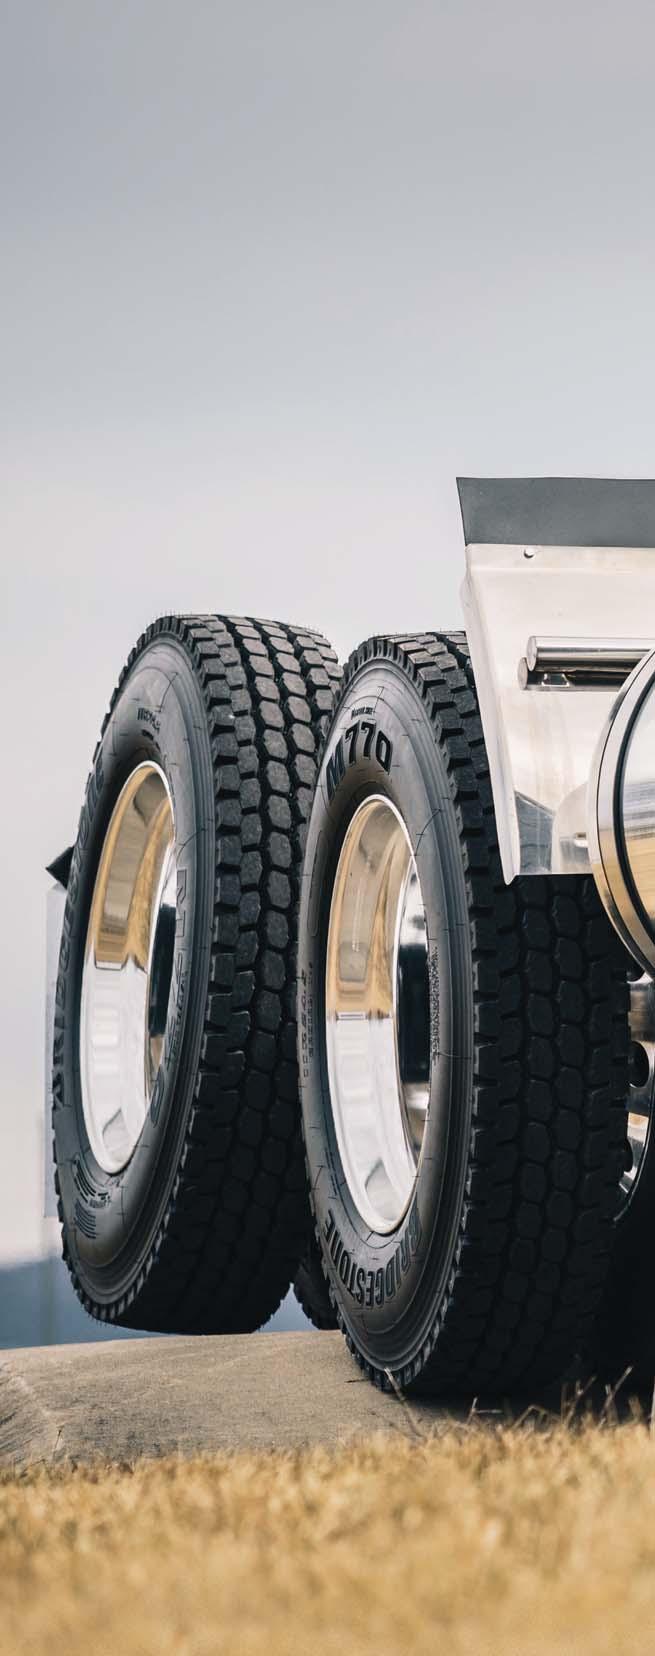 MACK mride Con mride, Mack trae la nueva generación en suspensiones de resortes para facilitar el trabajo en camiones de construcción.